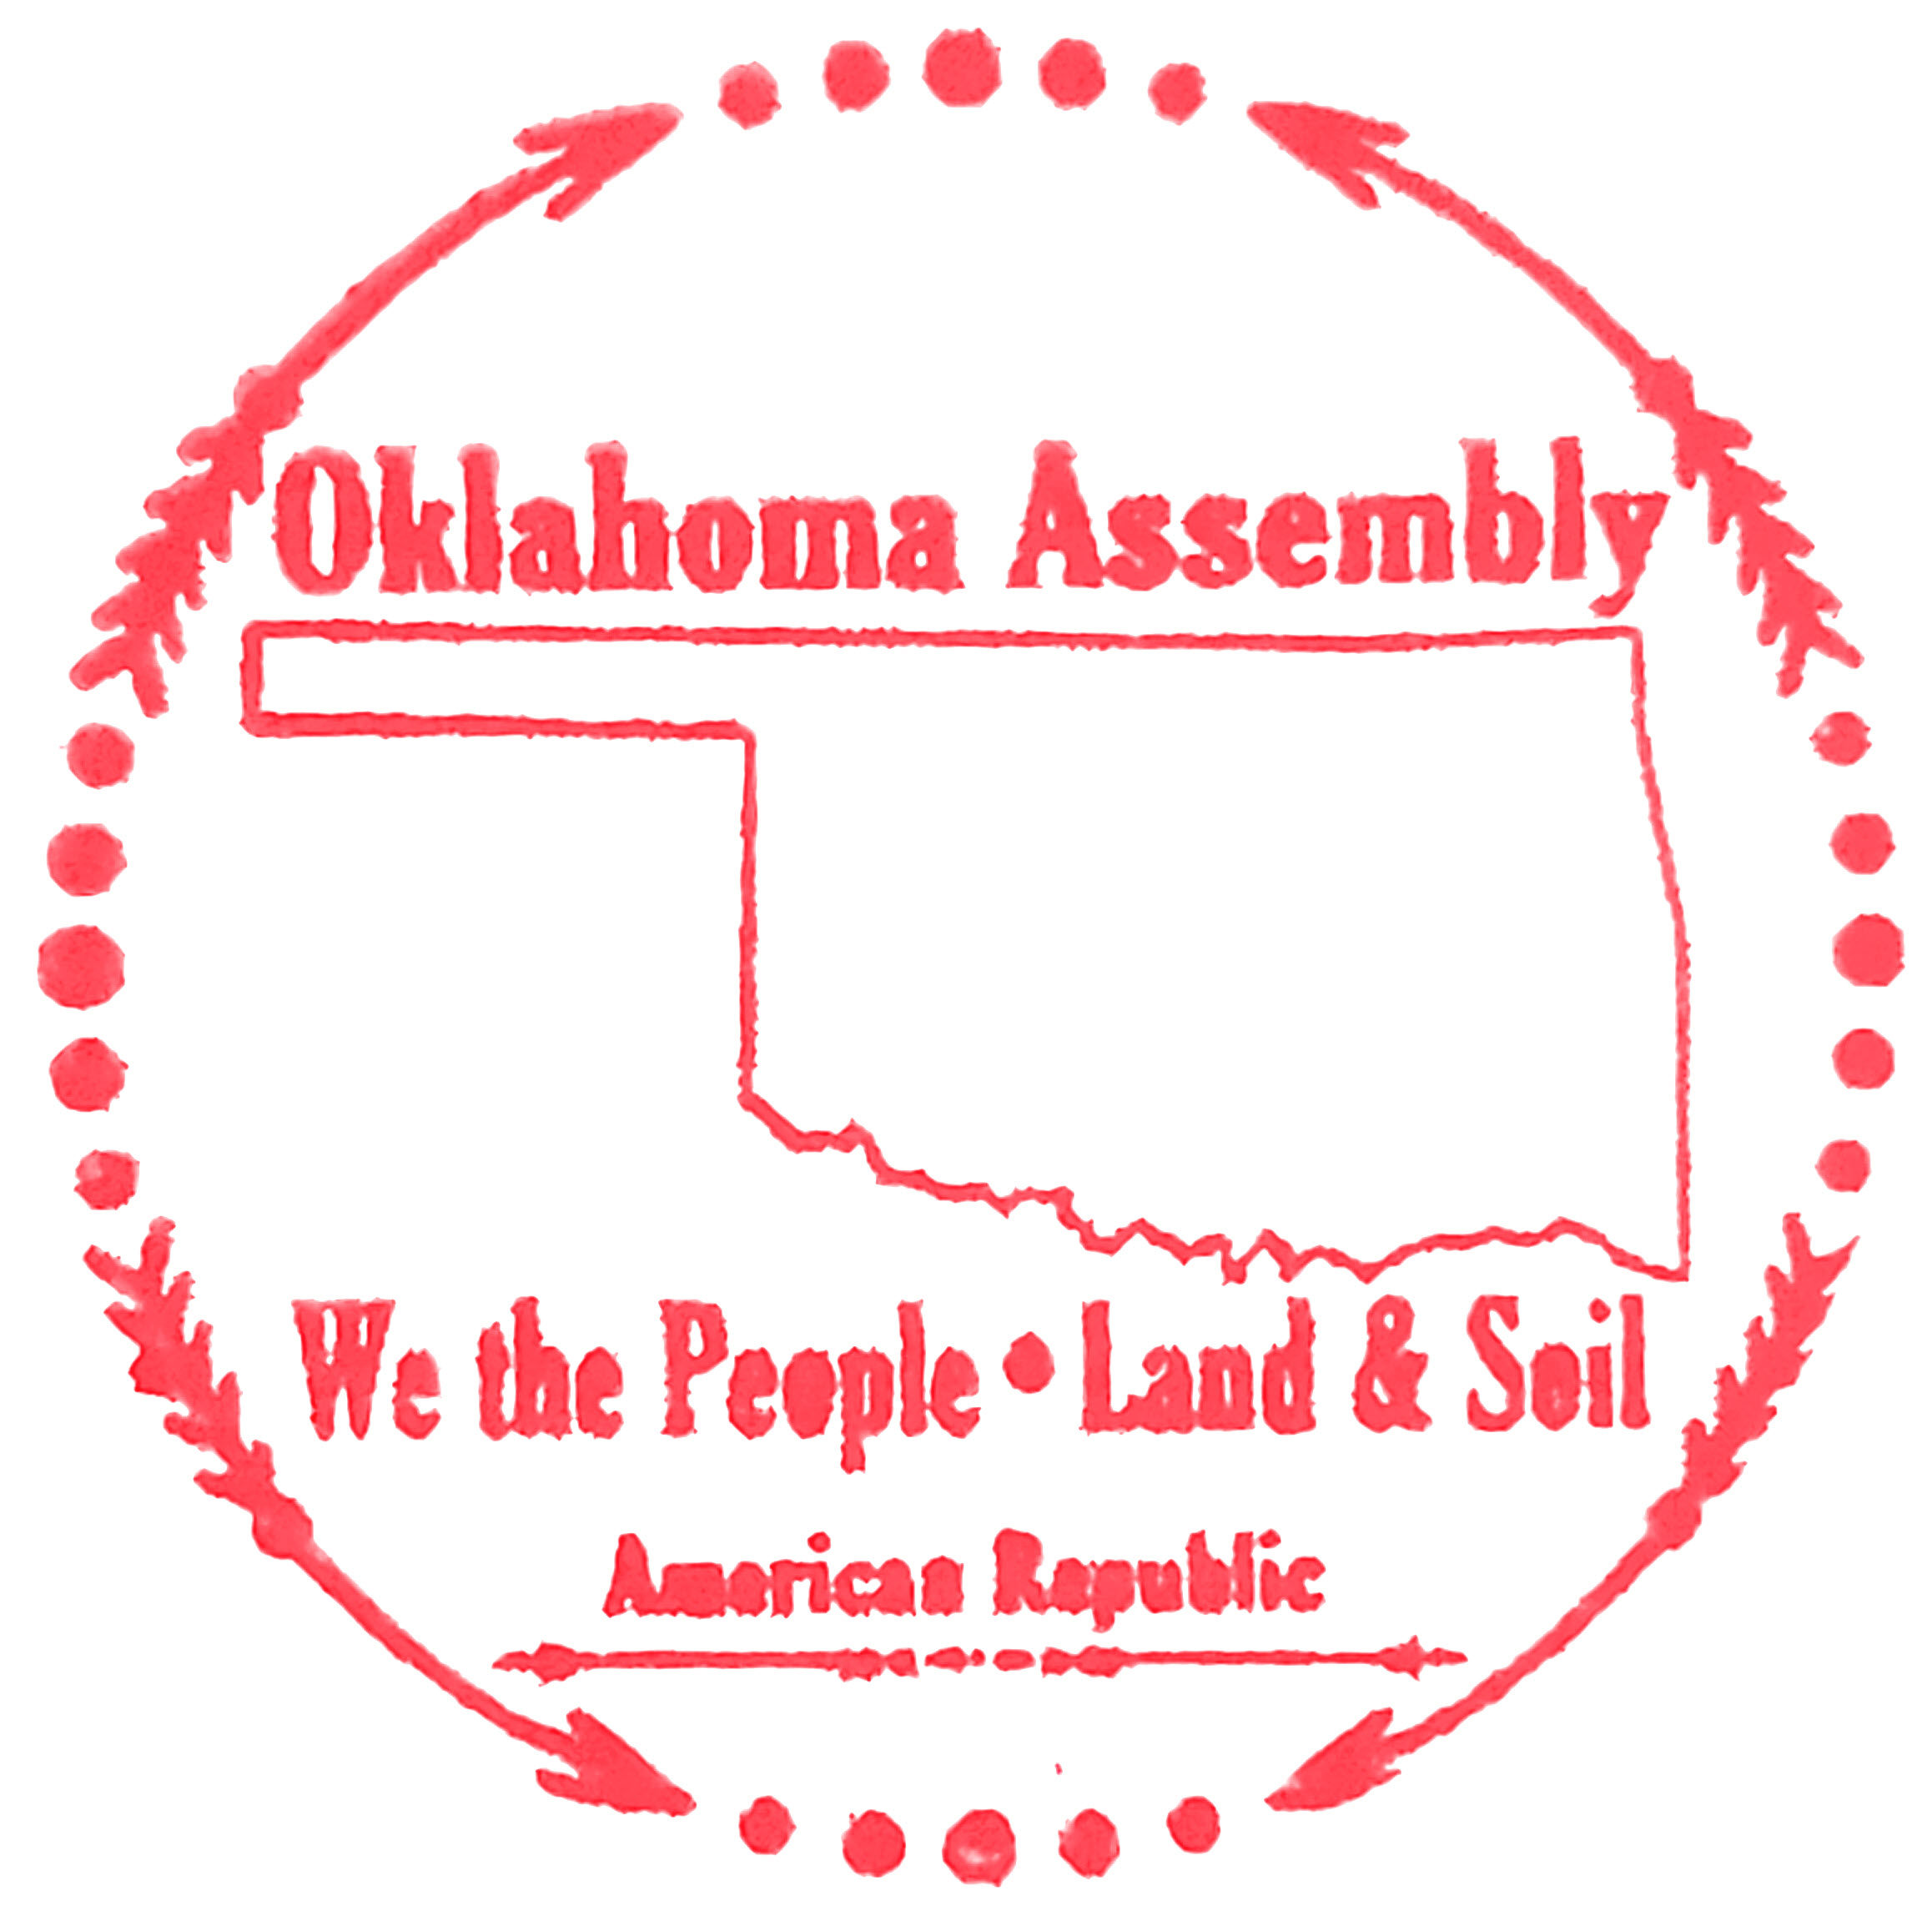 The Oklahoma Assembly